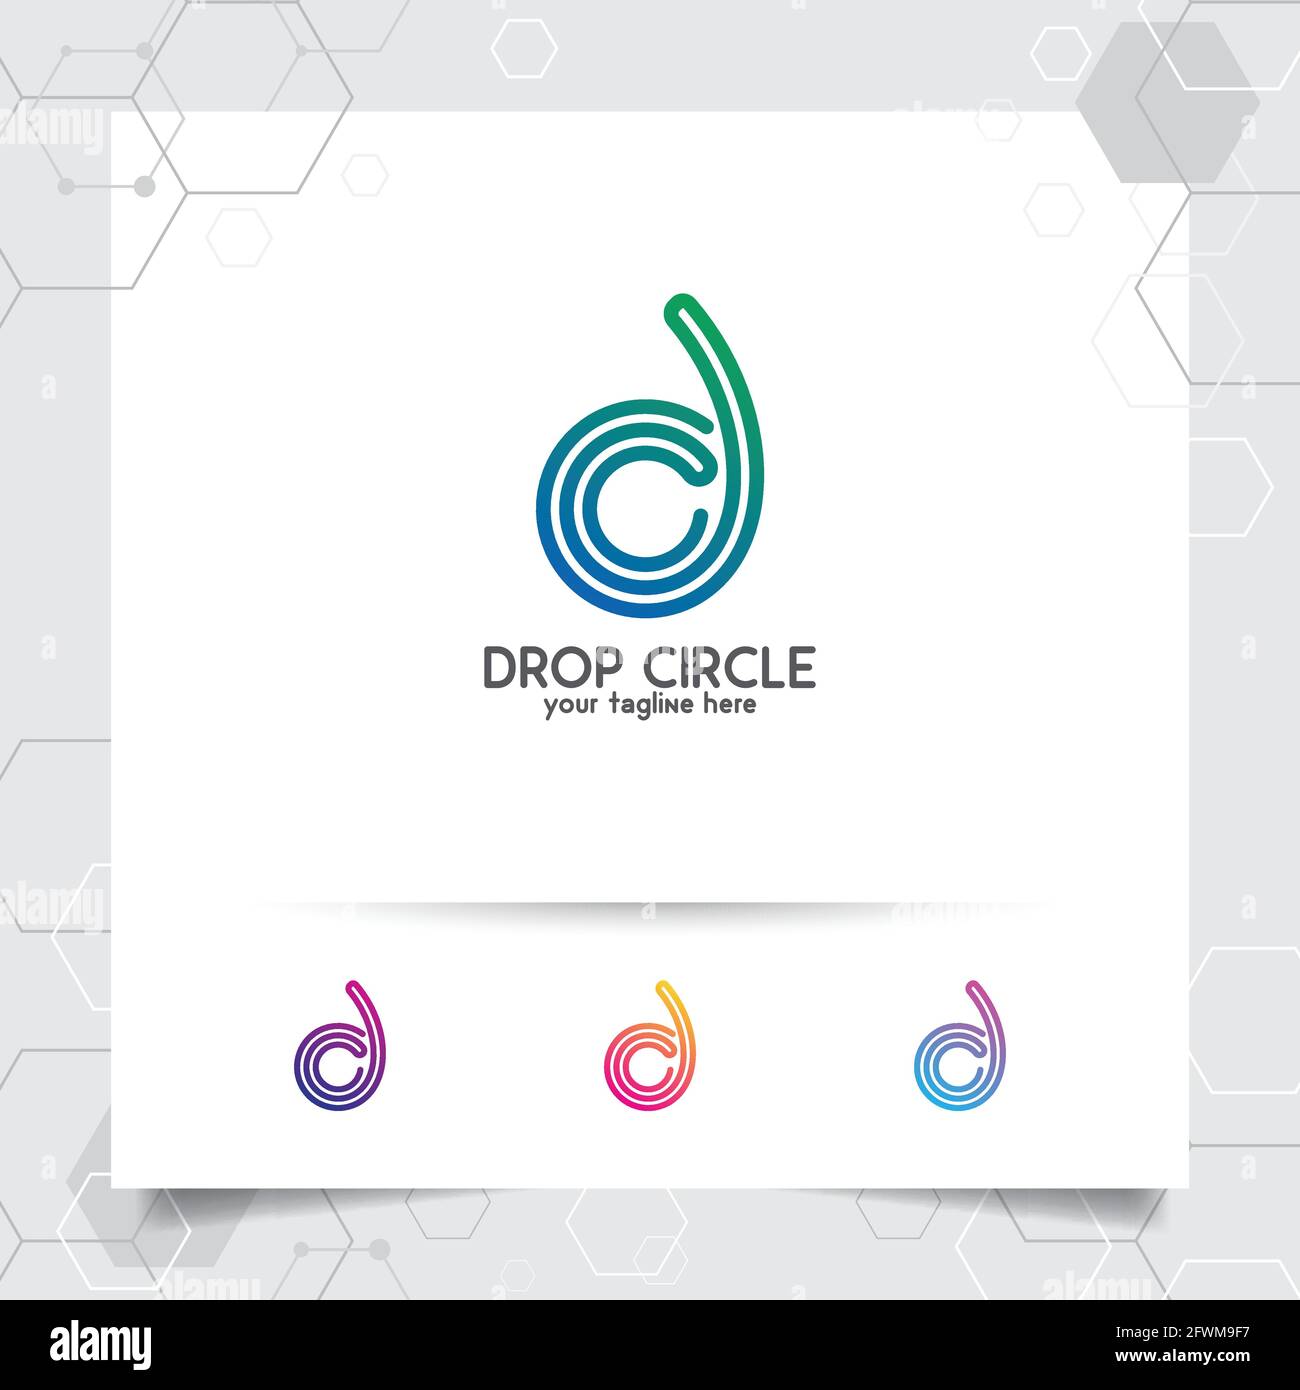 Business Finance Logo Design Vektor mit Konzept der Linie Spirale Buchstabe D für Marketing, Beratung, Bank, Handel und andere Unternehmen. Stock Vektor